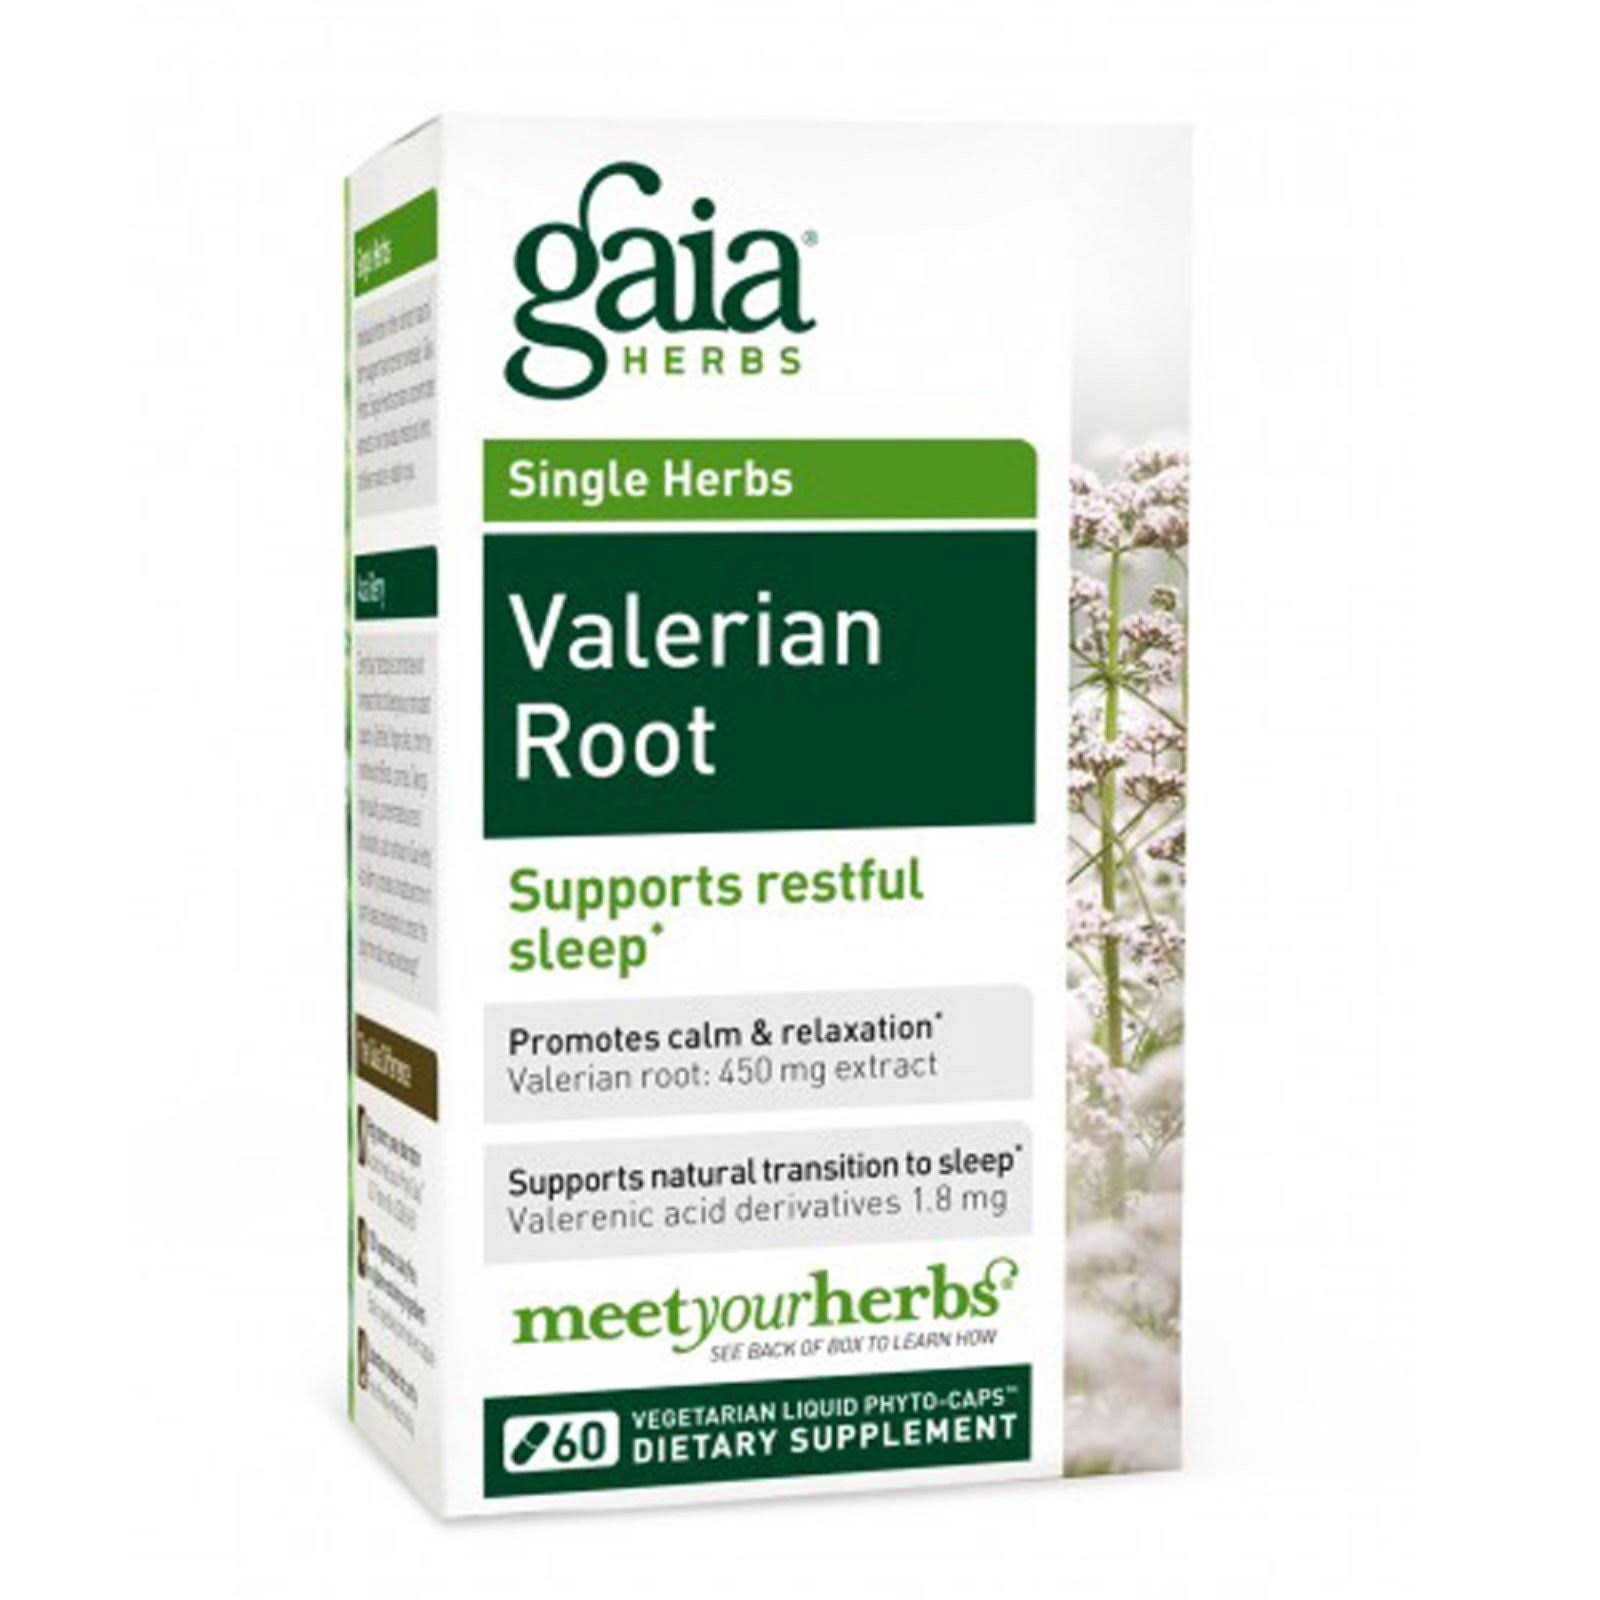 Gaia Herbs Valerian Root Supplement - 60 Liquid-Filled Capsules